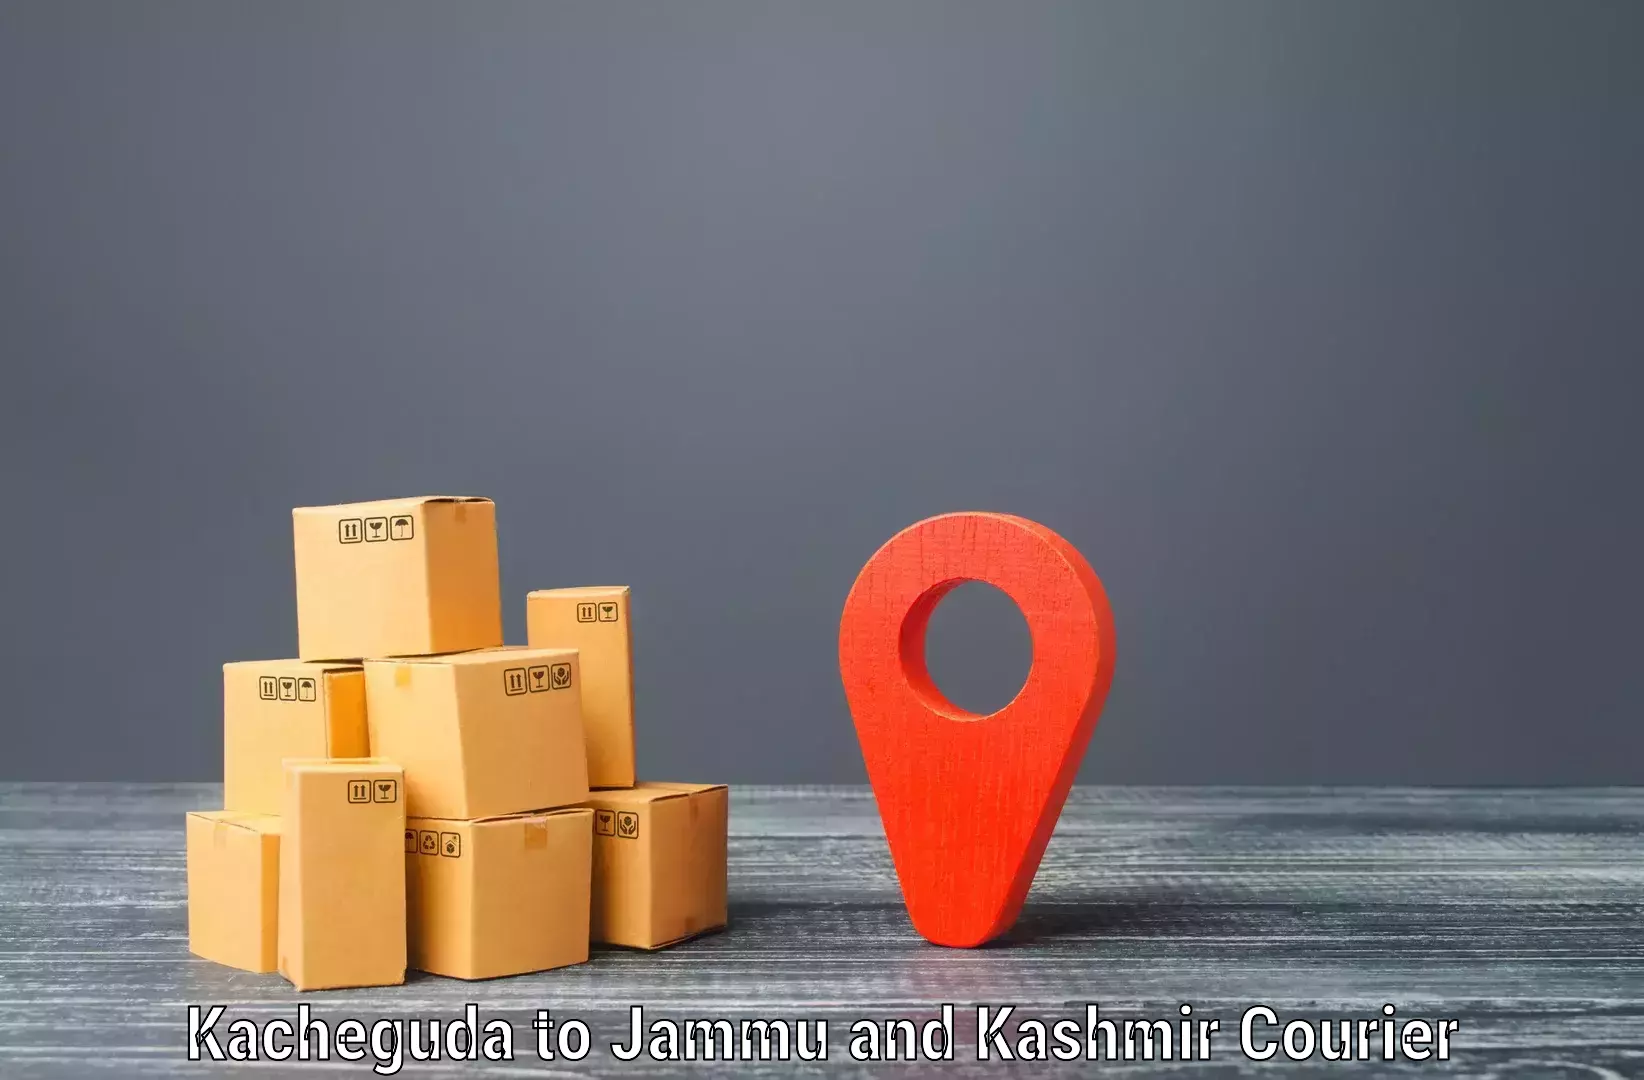 Nationwide shipping coverage Kacheguda to Kupwara